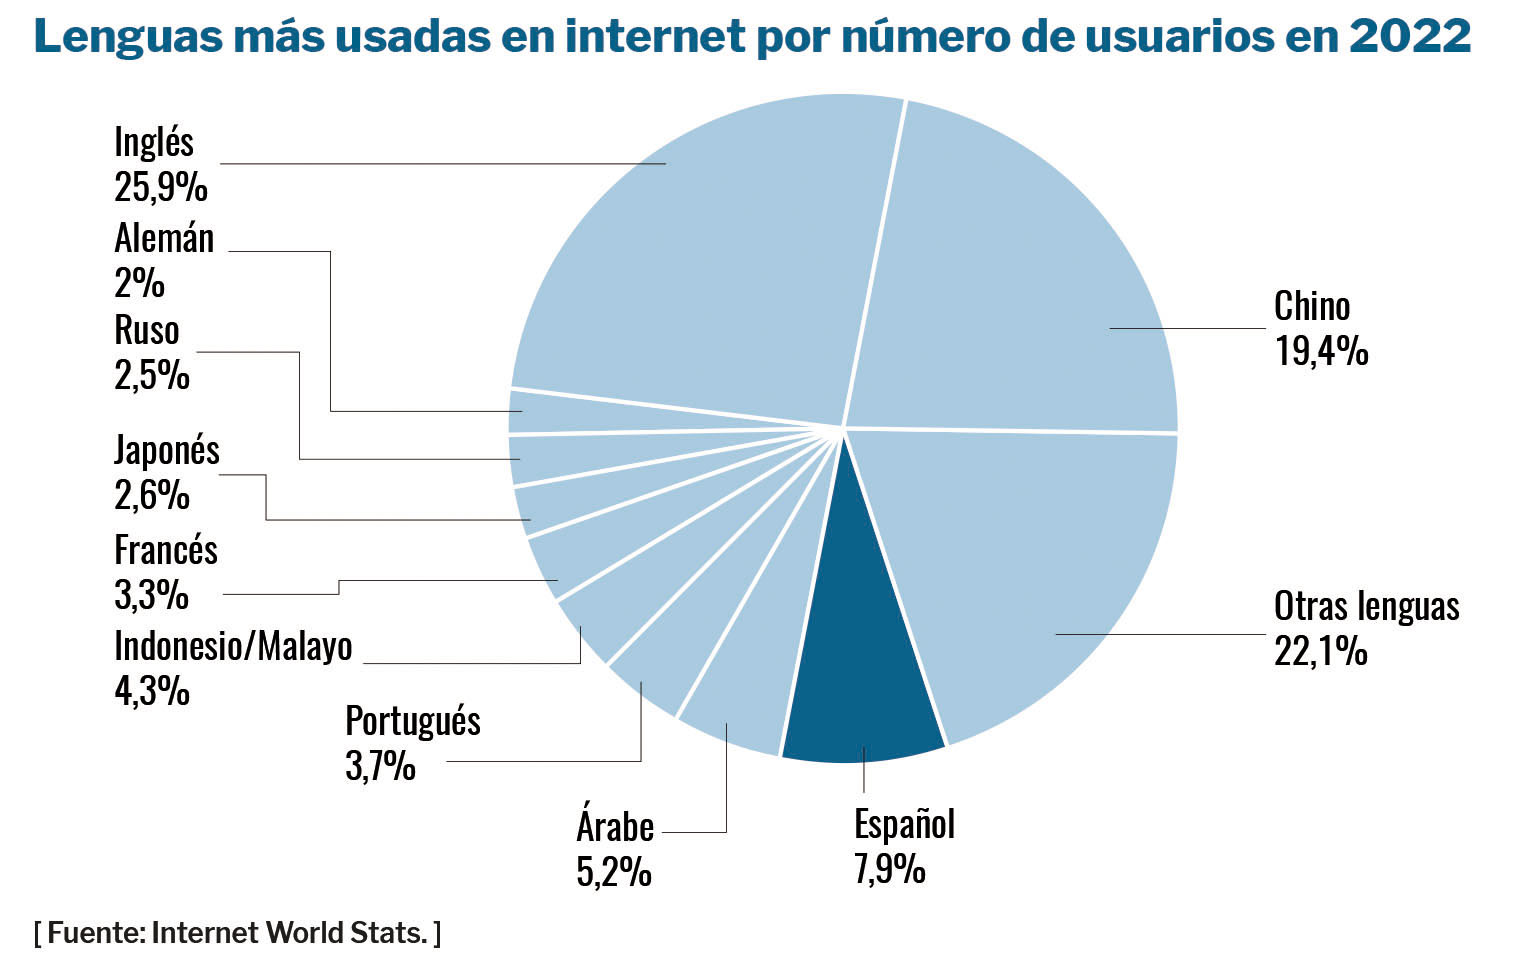 Lenguas más usadas en internet por número de usuarios